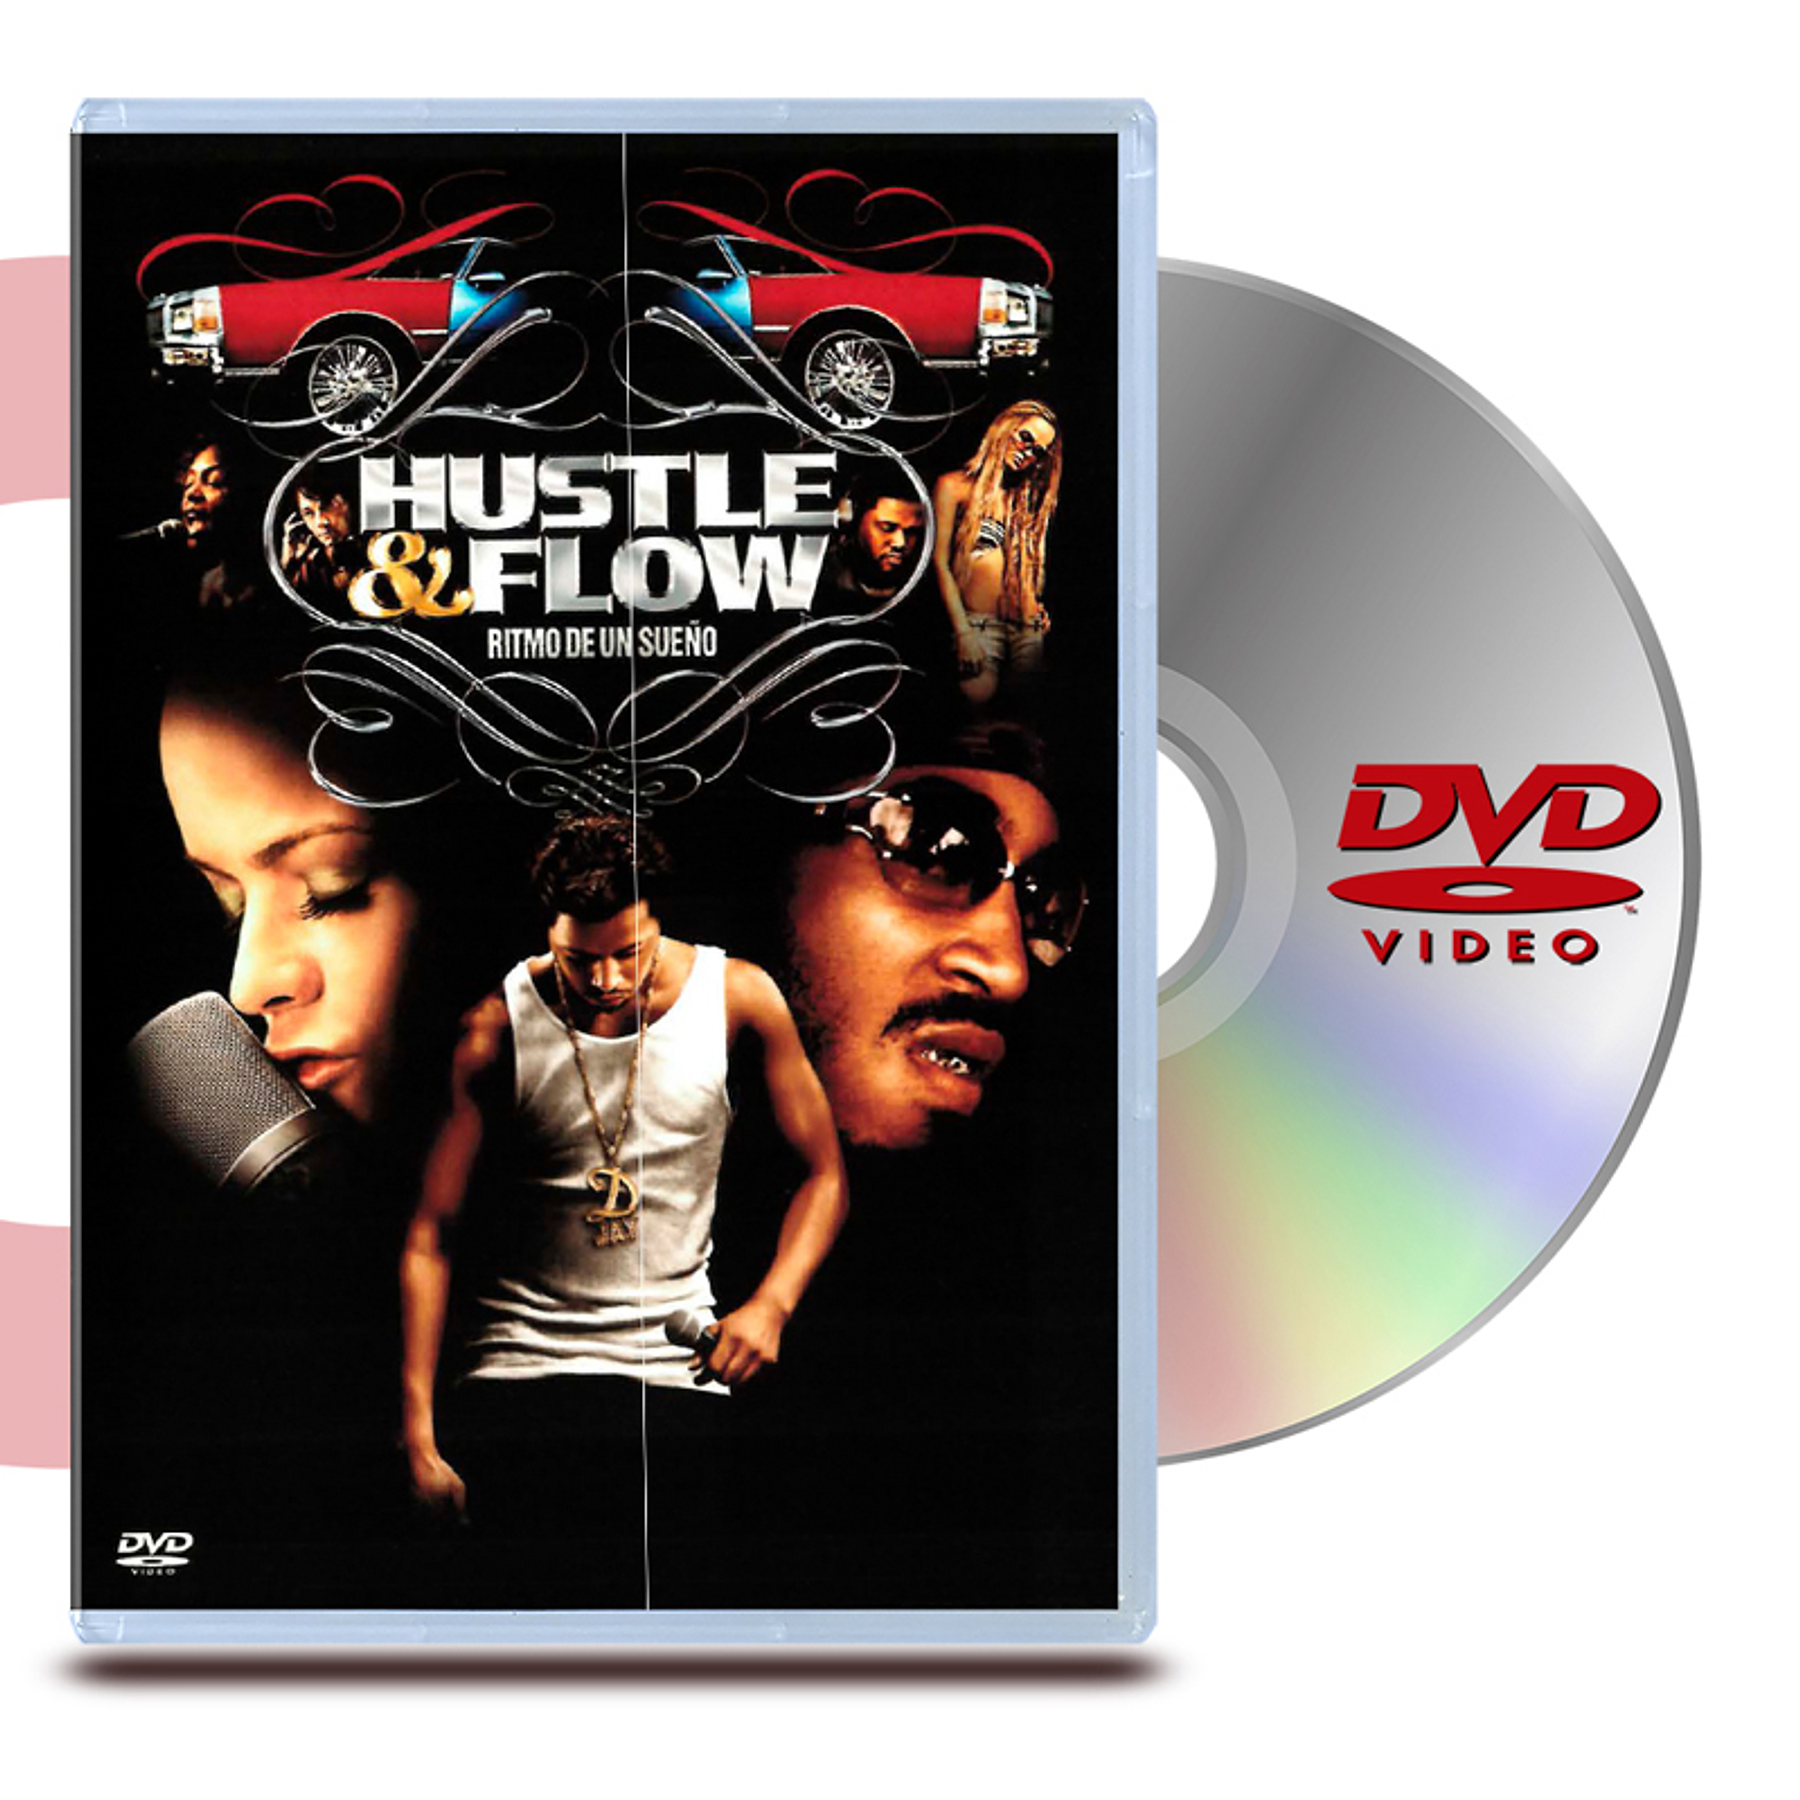 DVD RITMO DE UN SUEÑO (HUSTLE AND FLOW)